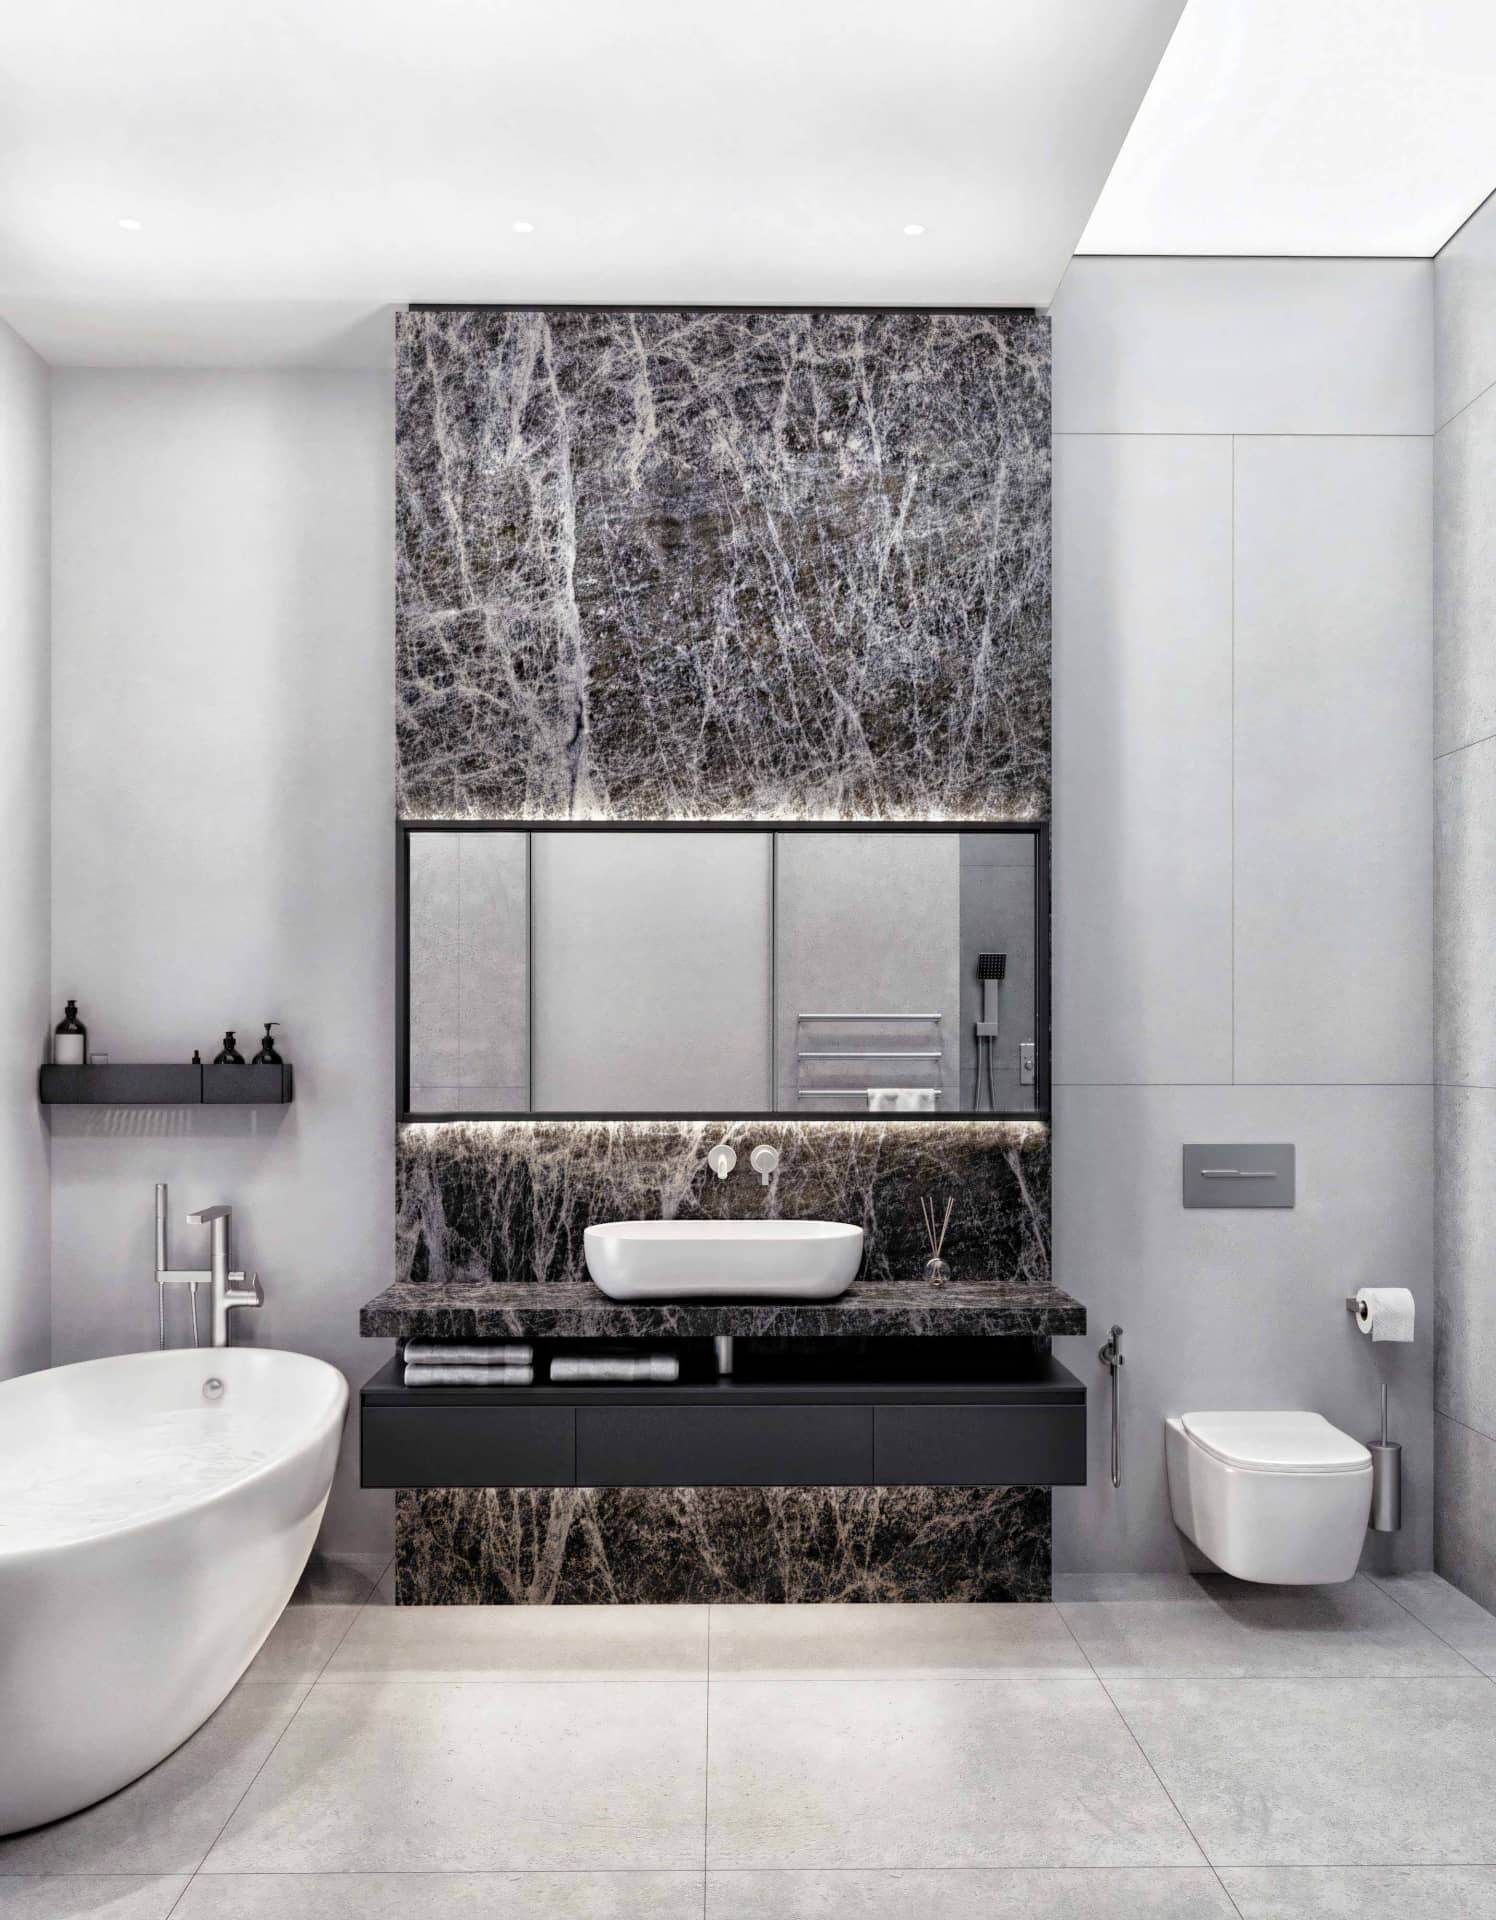 Современные цветовые решения красивых интерьеров ванных комнат